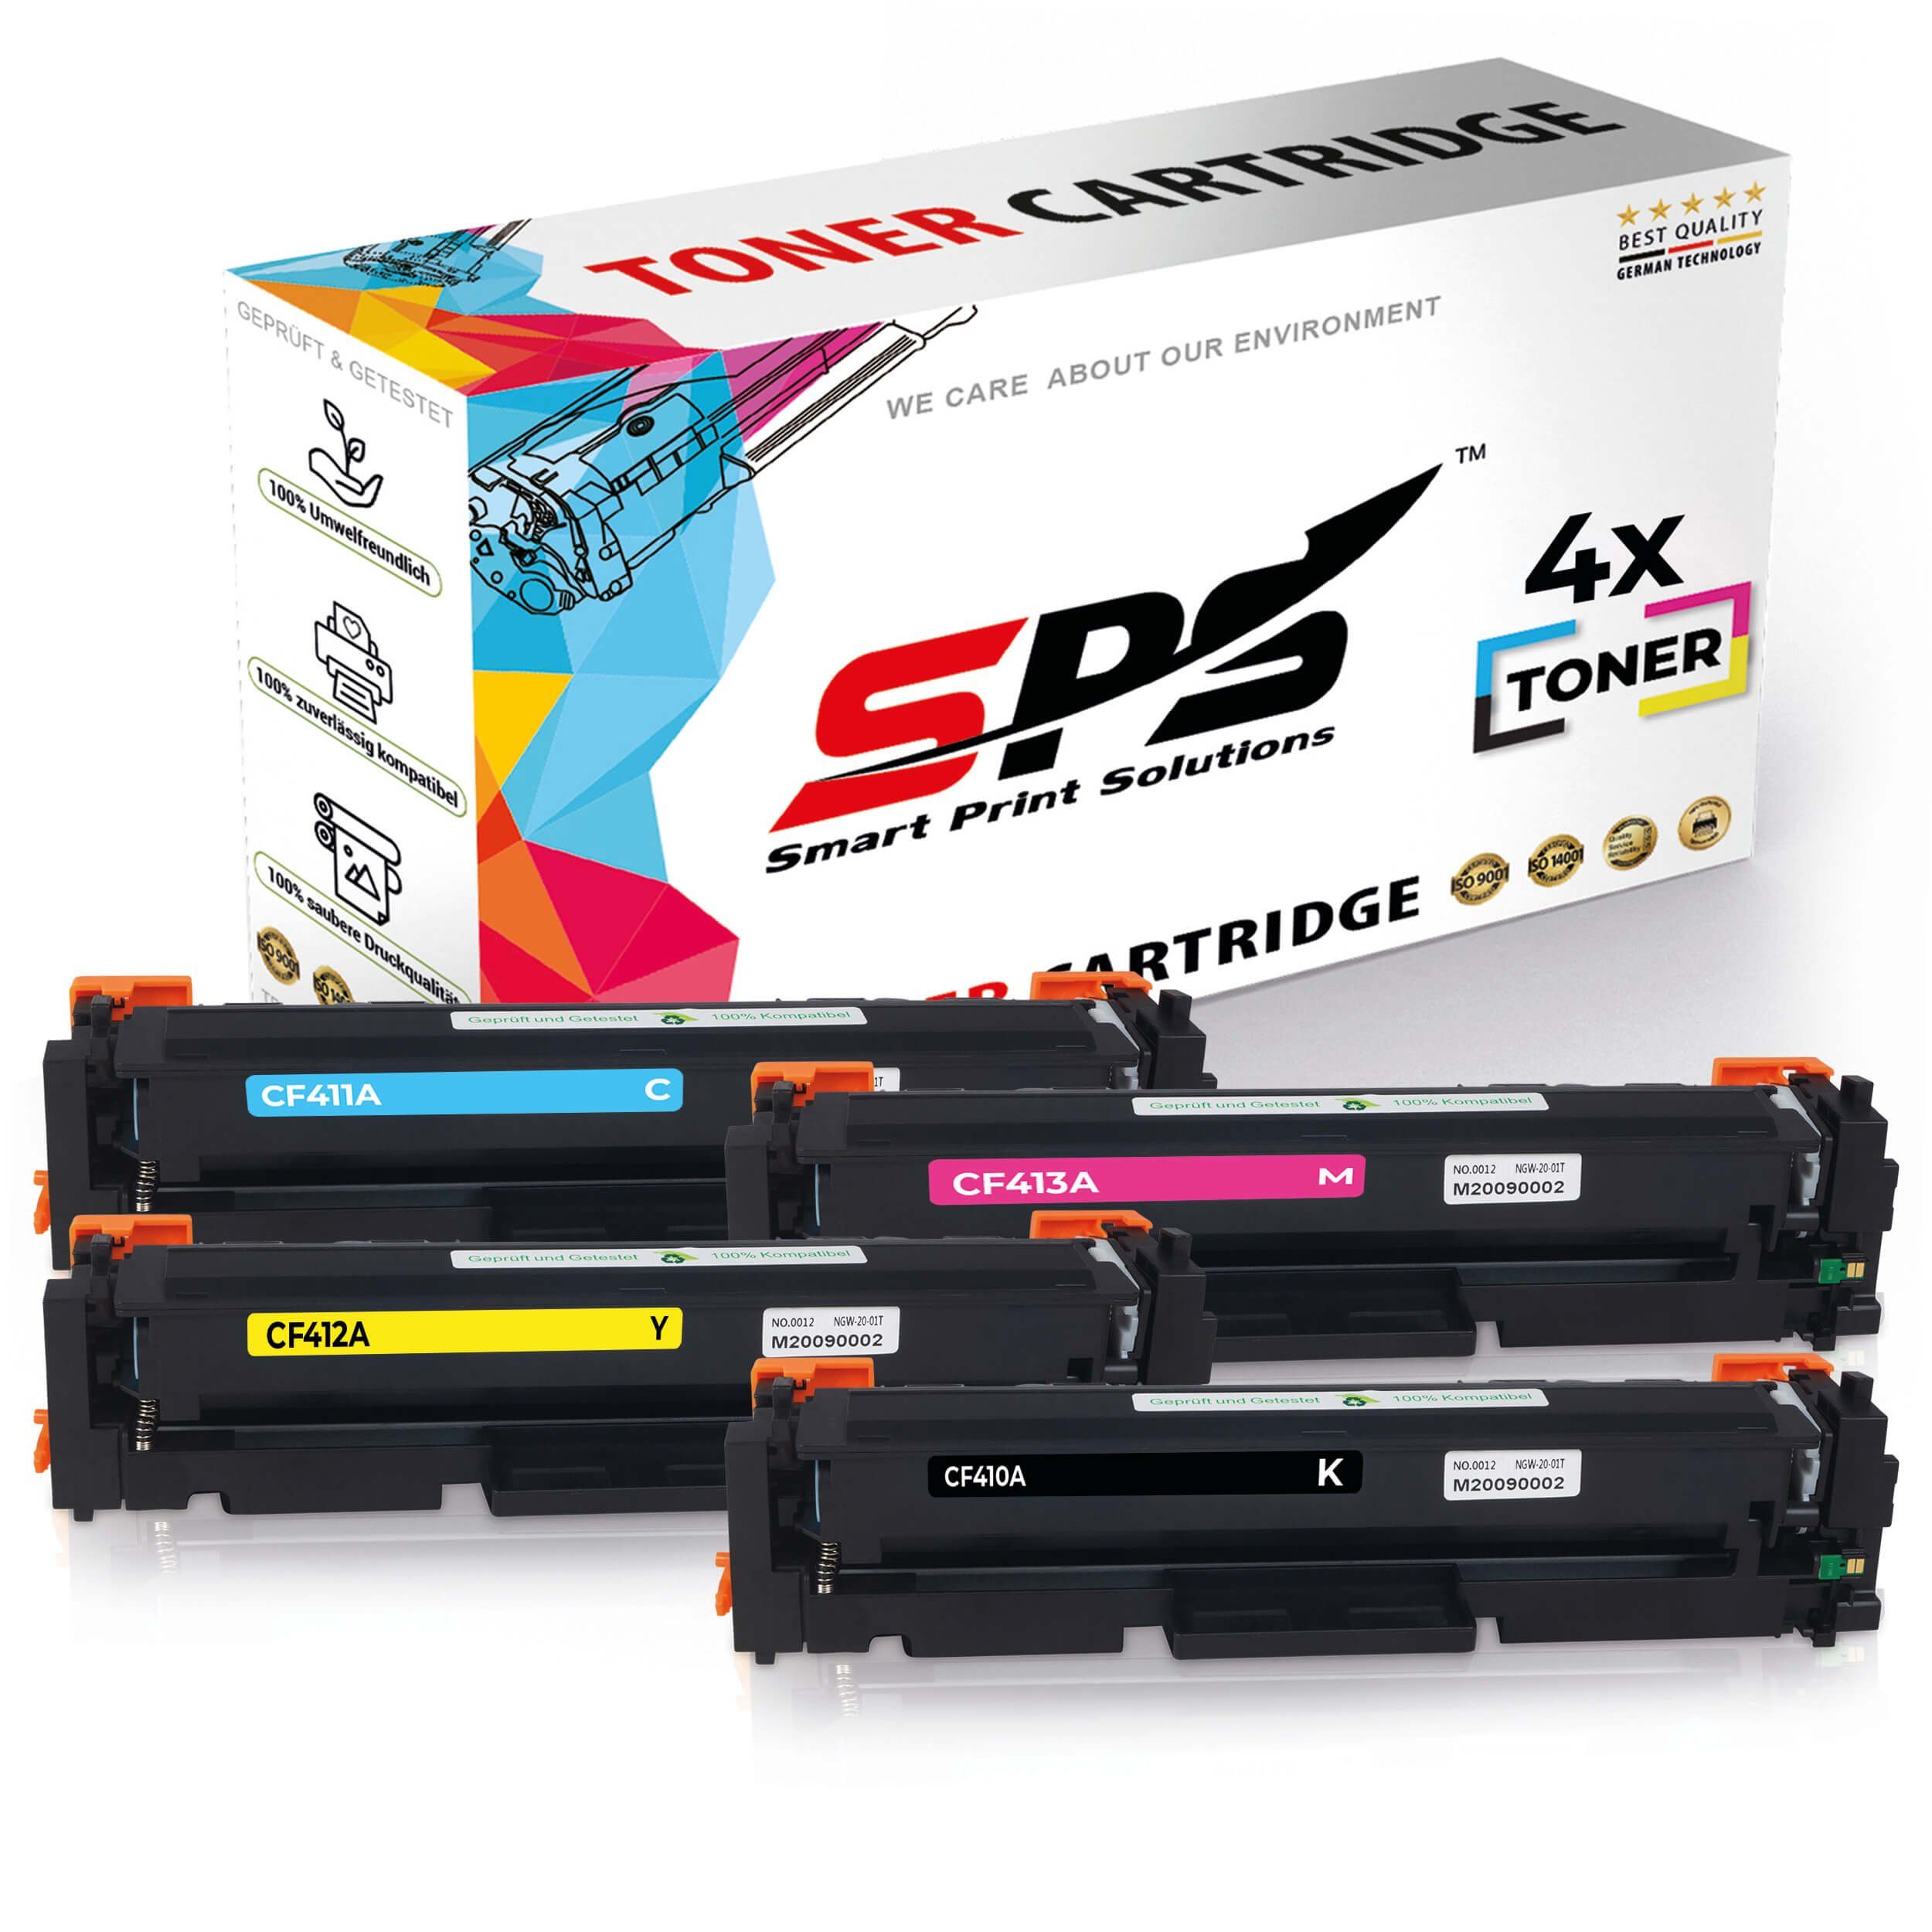 SPS Tonerkartusche 4x Multipack Set Kompatibel für HP Color LaserJet Pro MFP M 477 fnw, (4er Pack)